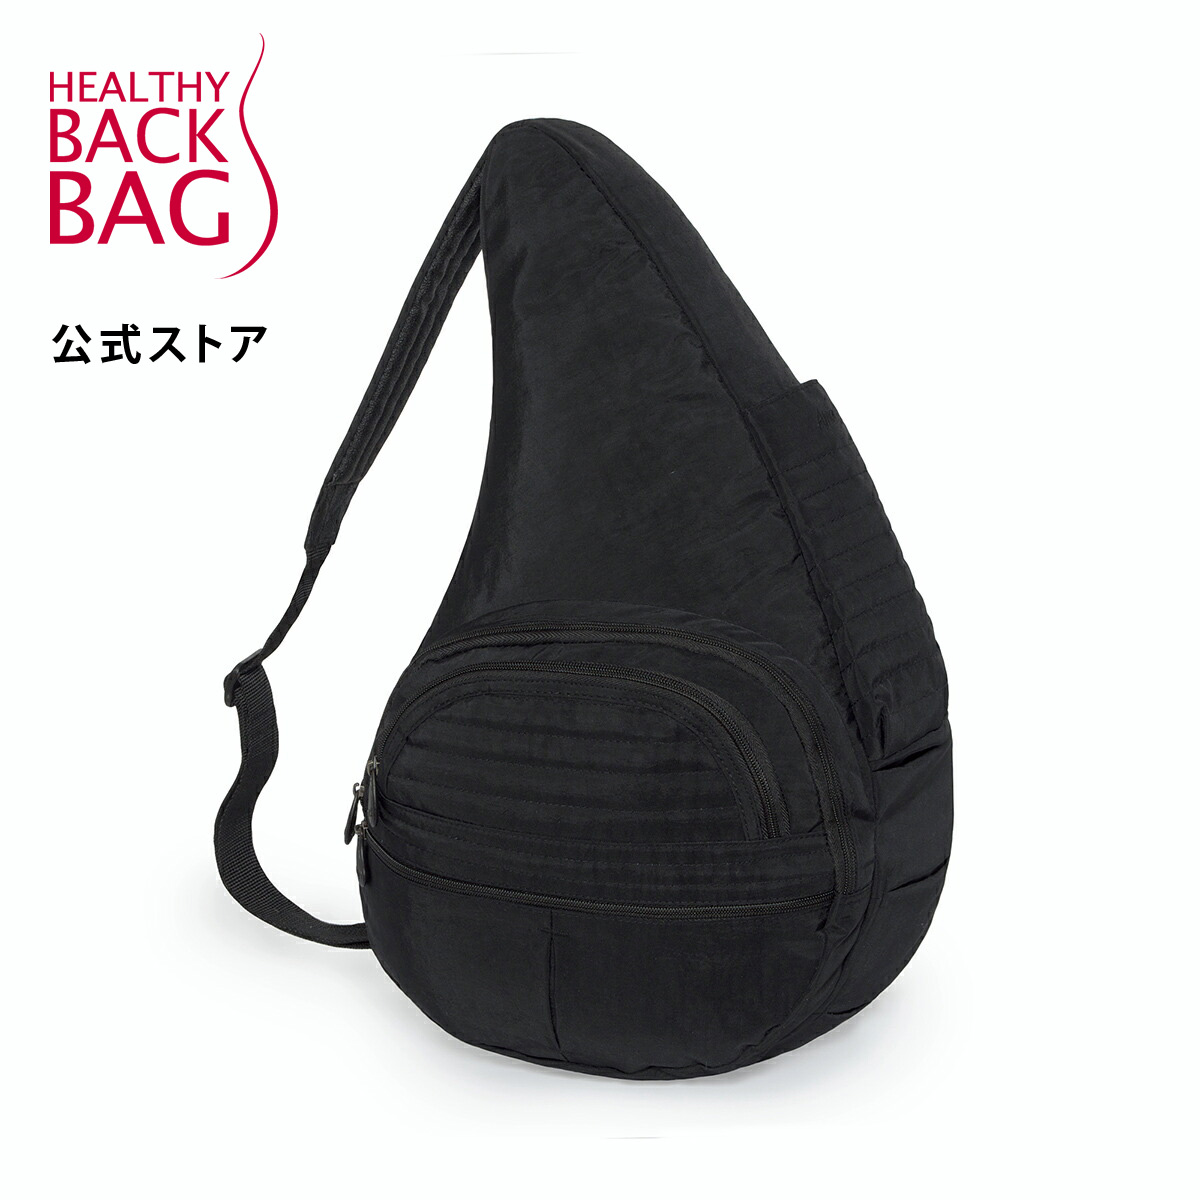 Healthy Back Bag ヘルシーバックバッグ ショルダーバッグ ボディバッグ 並行輸入品 旅行バッグ ブラック レディース 《ミニポーチ付》公式ストア 軽量 ビッグバッグ メンズ 人気ブレゼント!